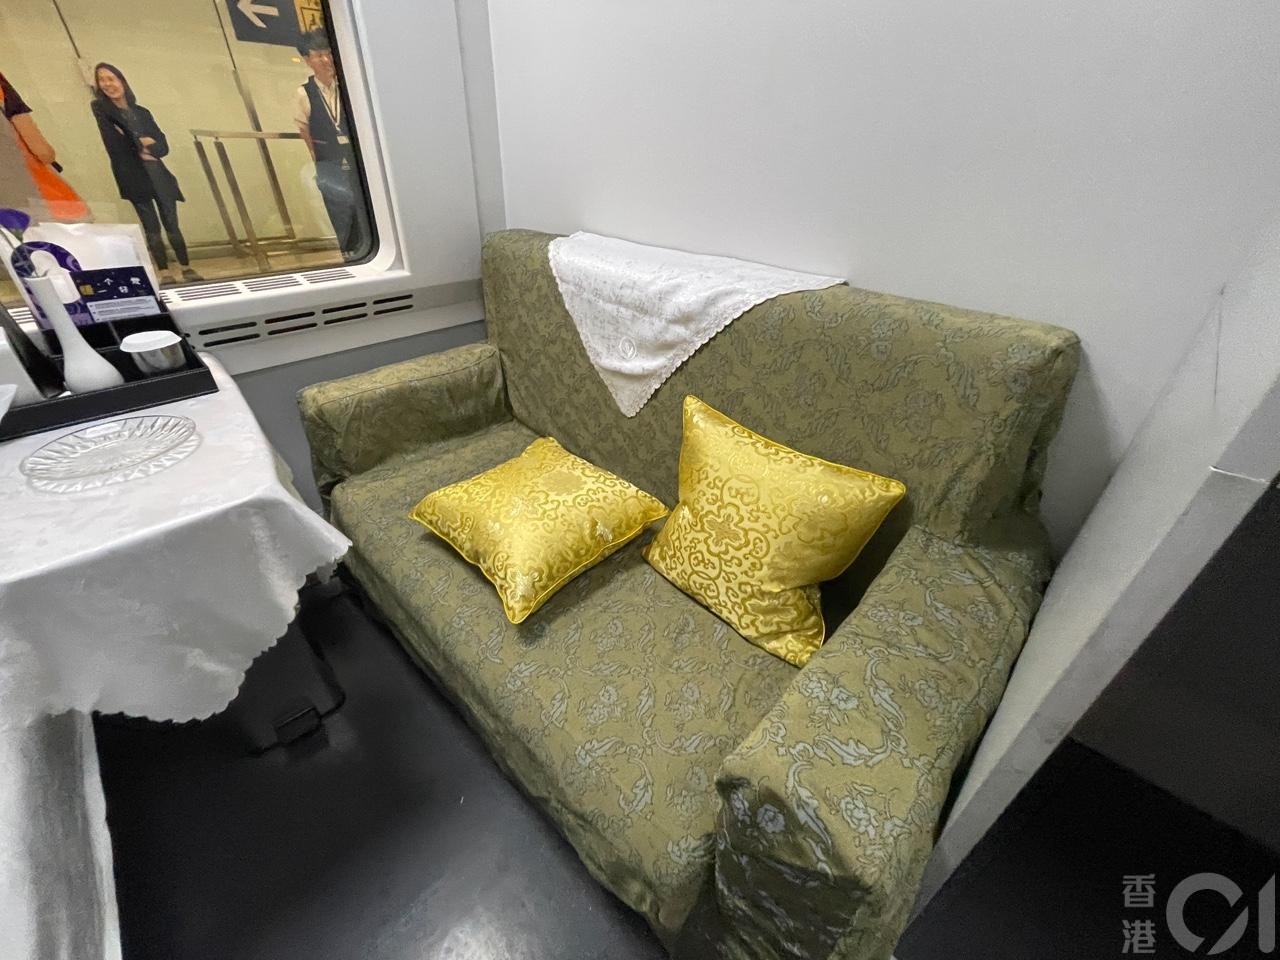 来往香港至上海的高铁通宵卧铺列车6月15日晚启航。列车特点是特设高级卧铺床位，票价每位高达2,128元。房间只有一边有上下架床各一张，另一边则为一张两座位梳化。(潘耀升摄)